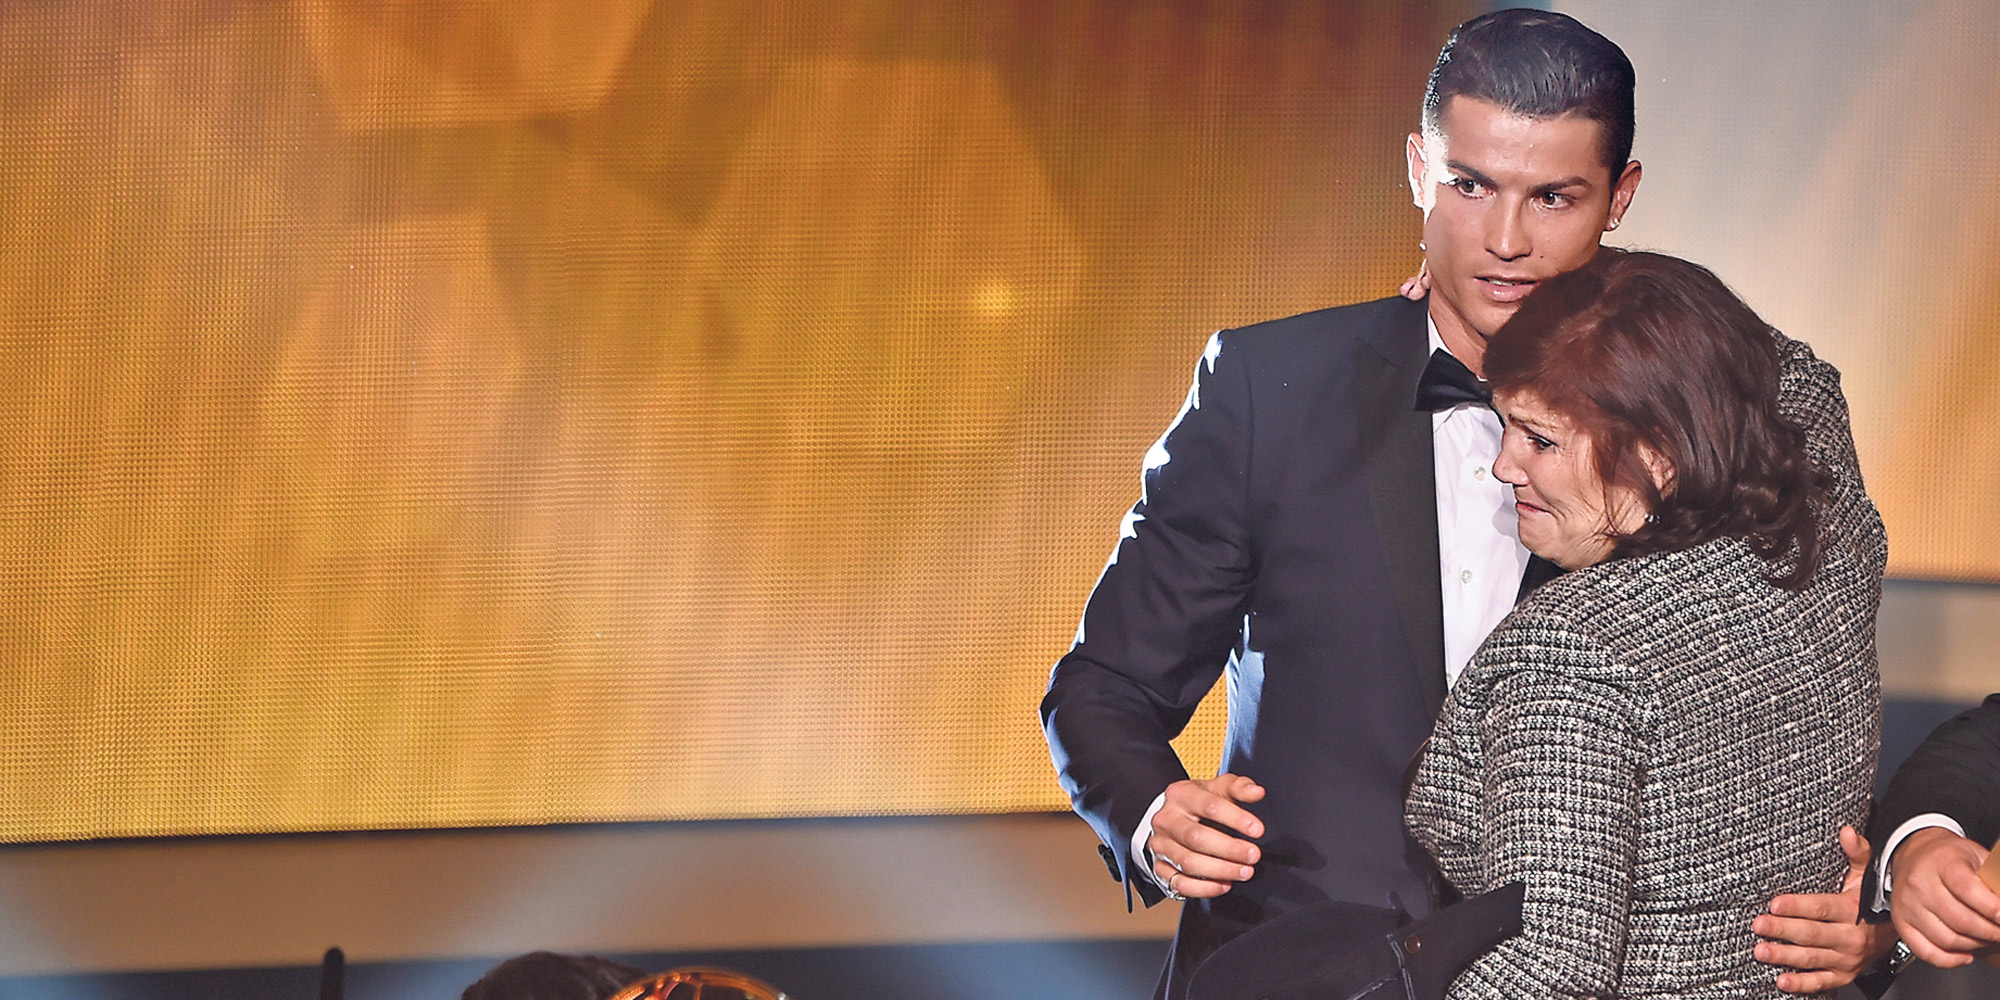 Mauvaise nouvelle : La mère de Cristiano Ronaldo admise en soins intensifs